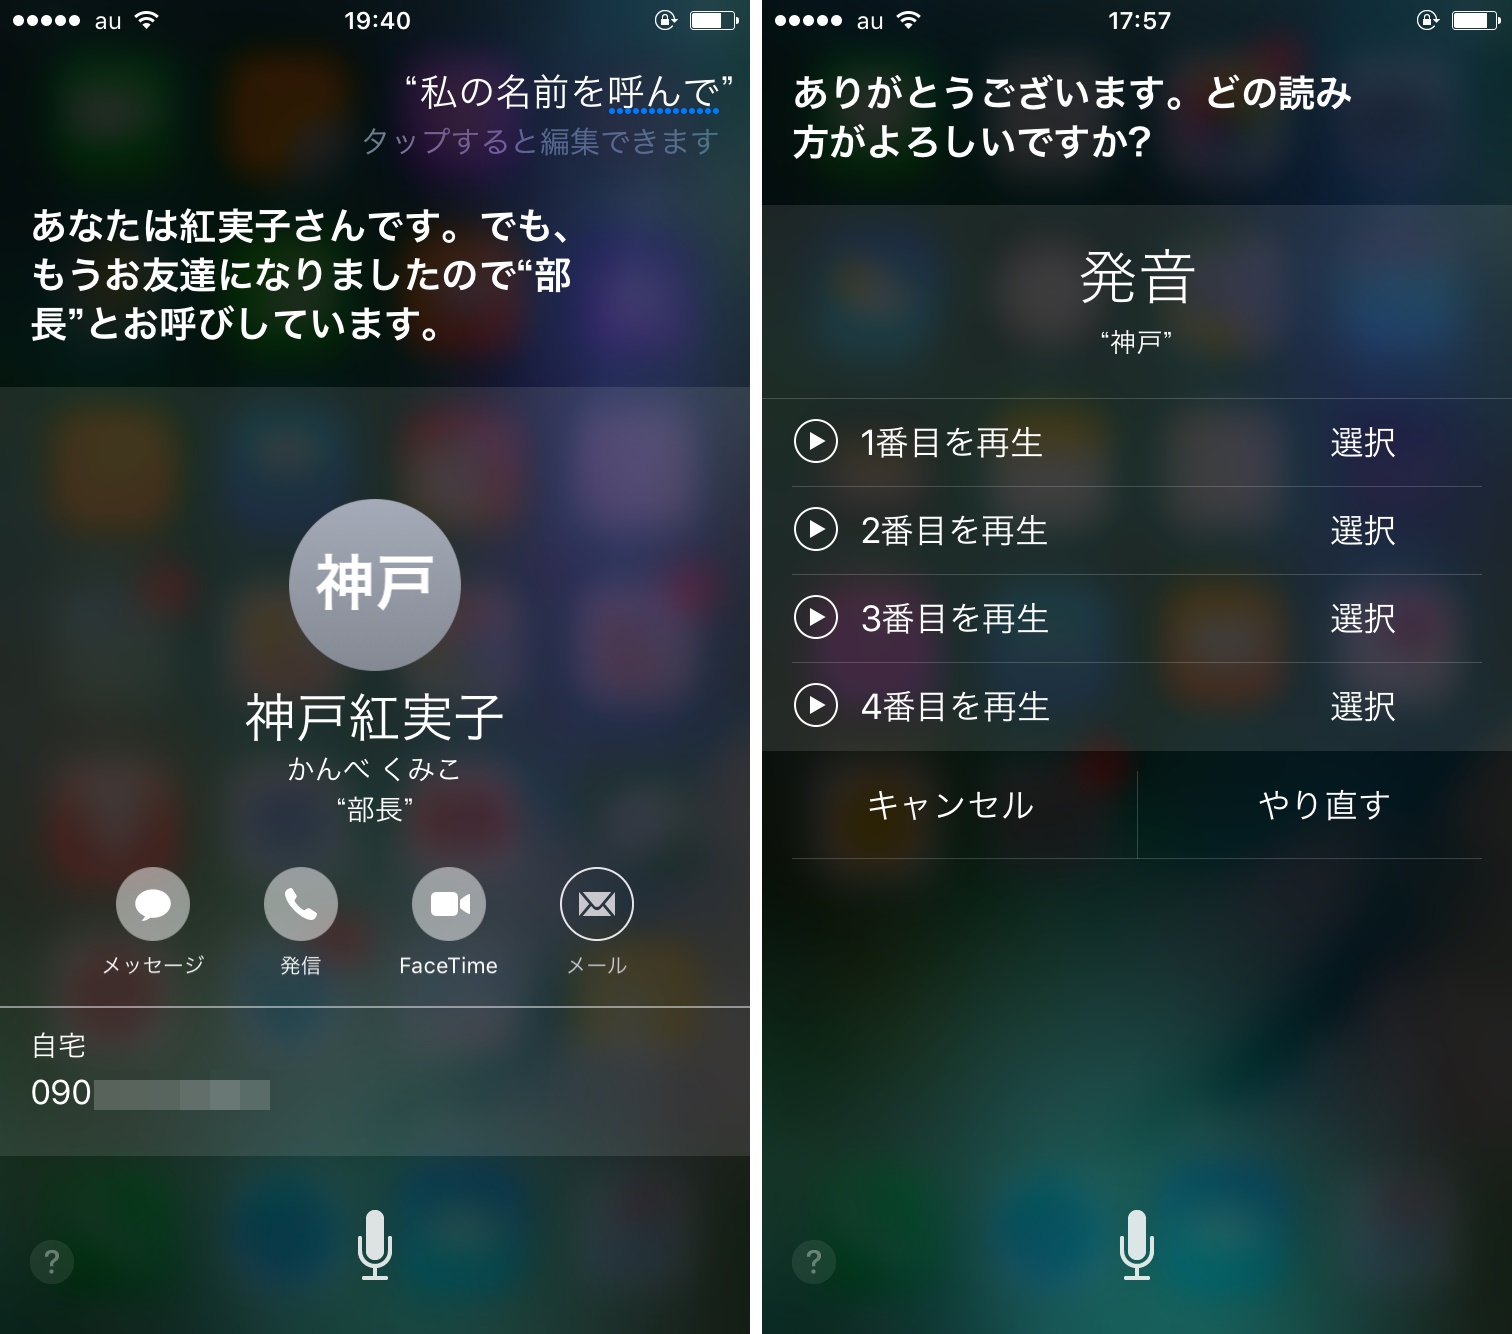 Siriにニックネームを登録すれば友だち感覚で会話ができる Iphone Tips Engadget 日本版